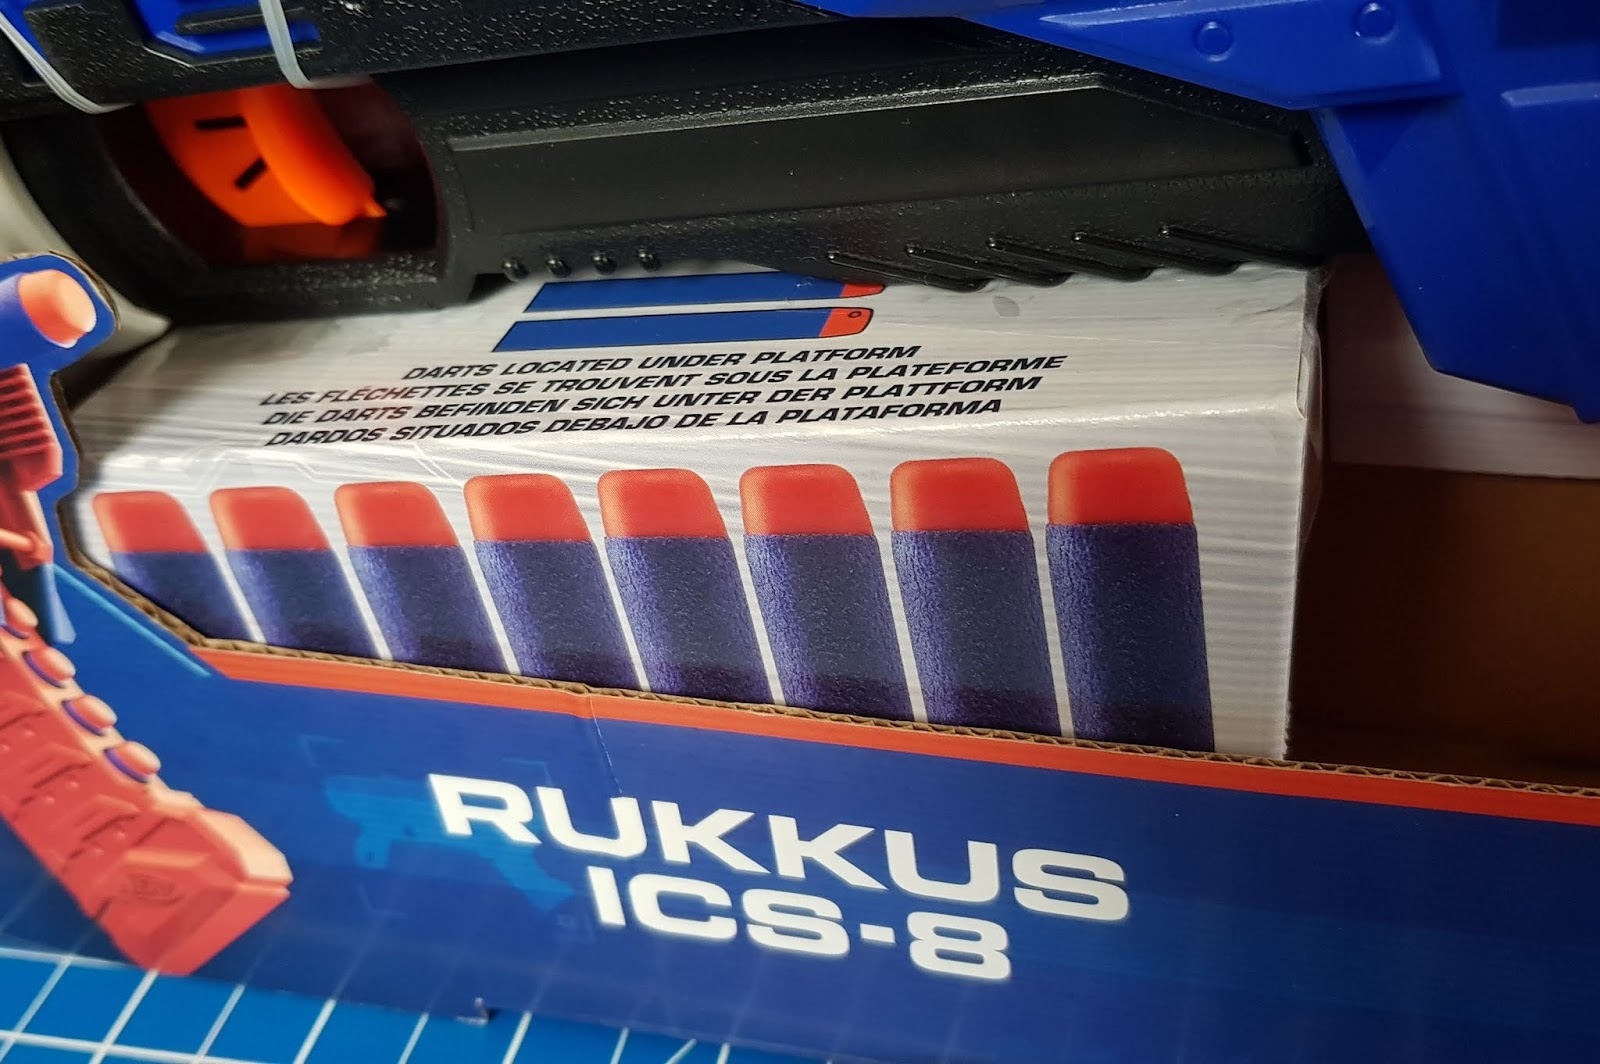 NERF Rukkus Ics-8 N-strike Elite E2654 Includes 8 Darts for sale